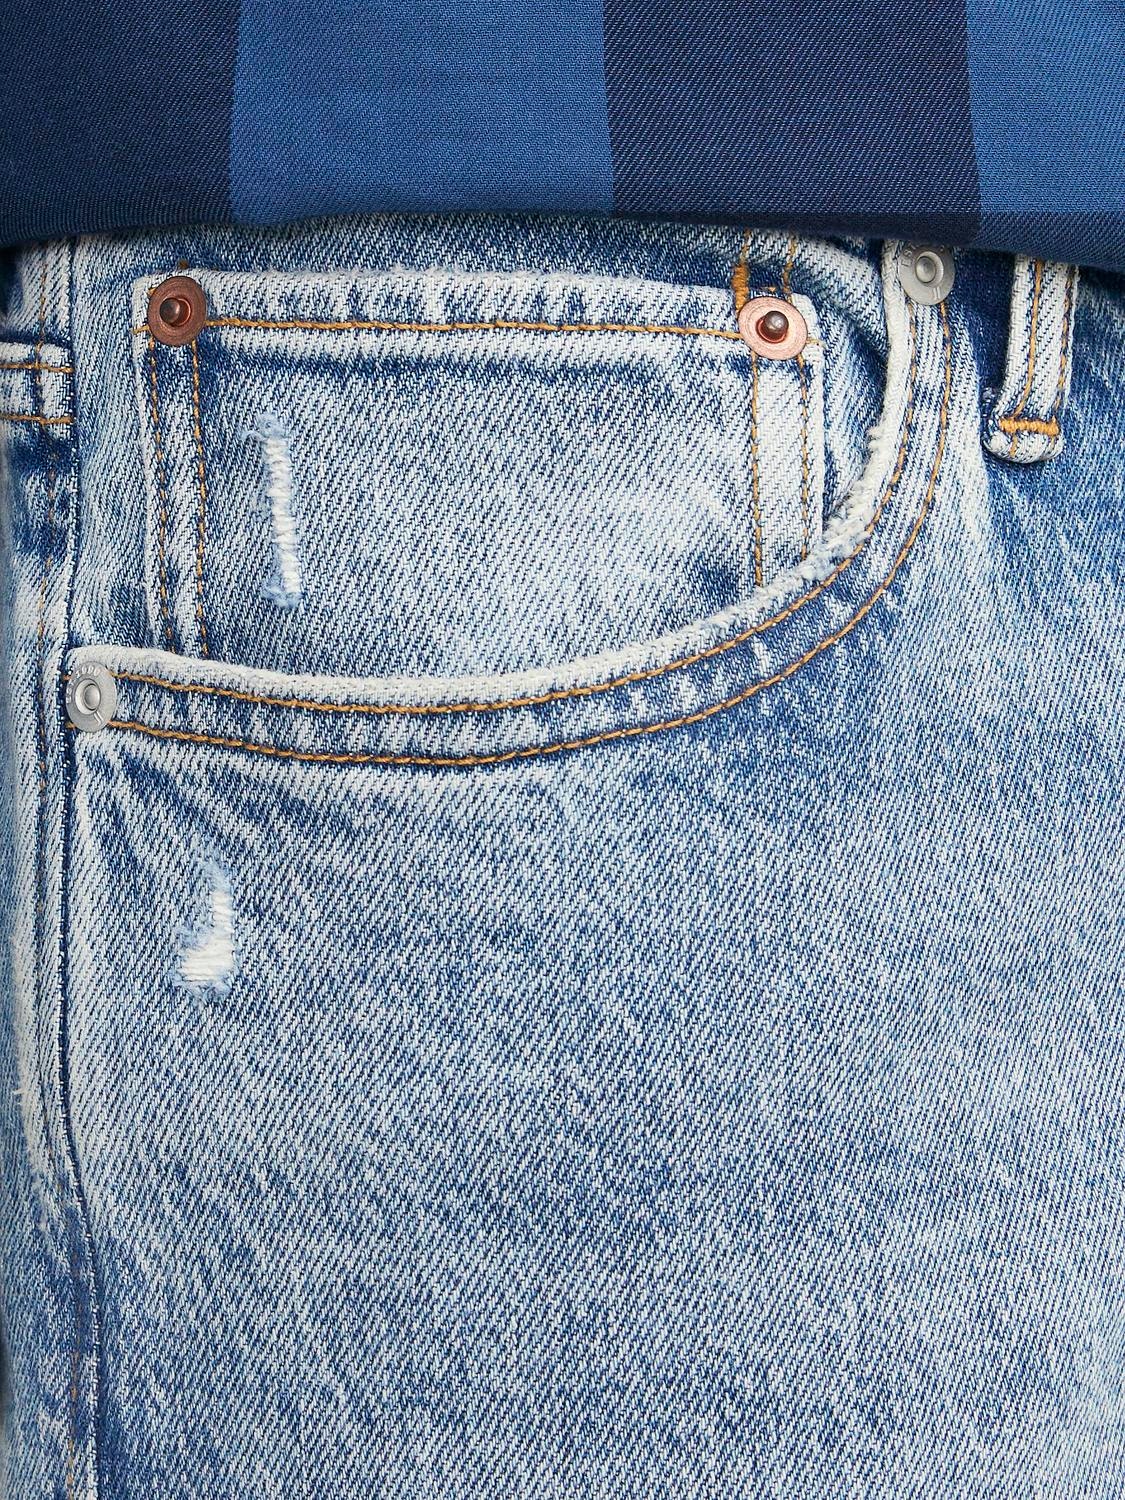 Jack & Jones JJIMIKE JJORIGINAL CB 232 BF Tapered fit jeans -Blue Denim - 12246904